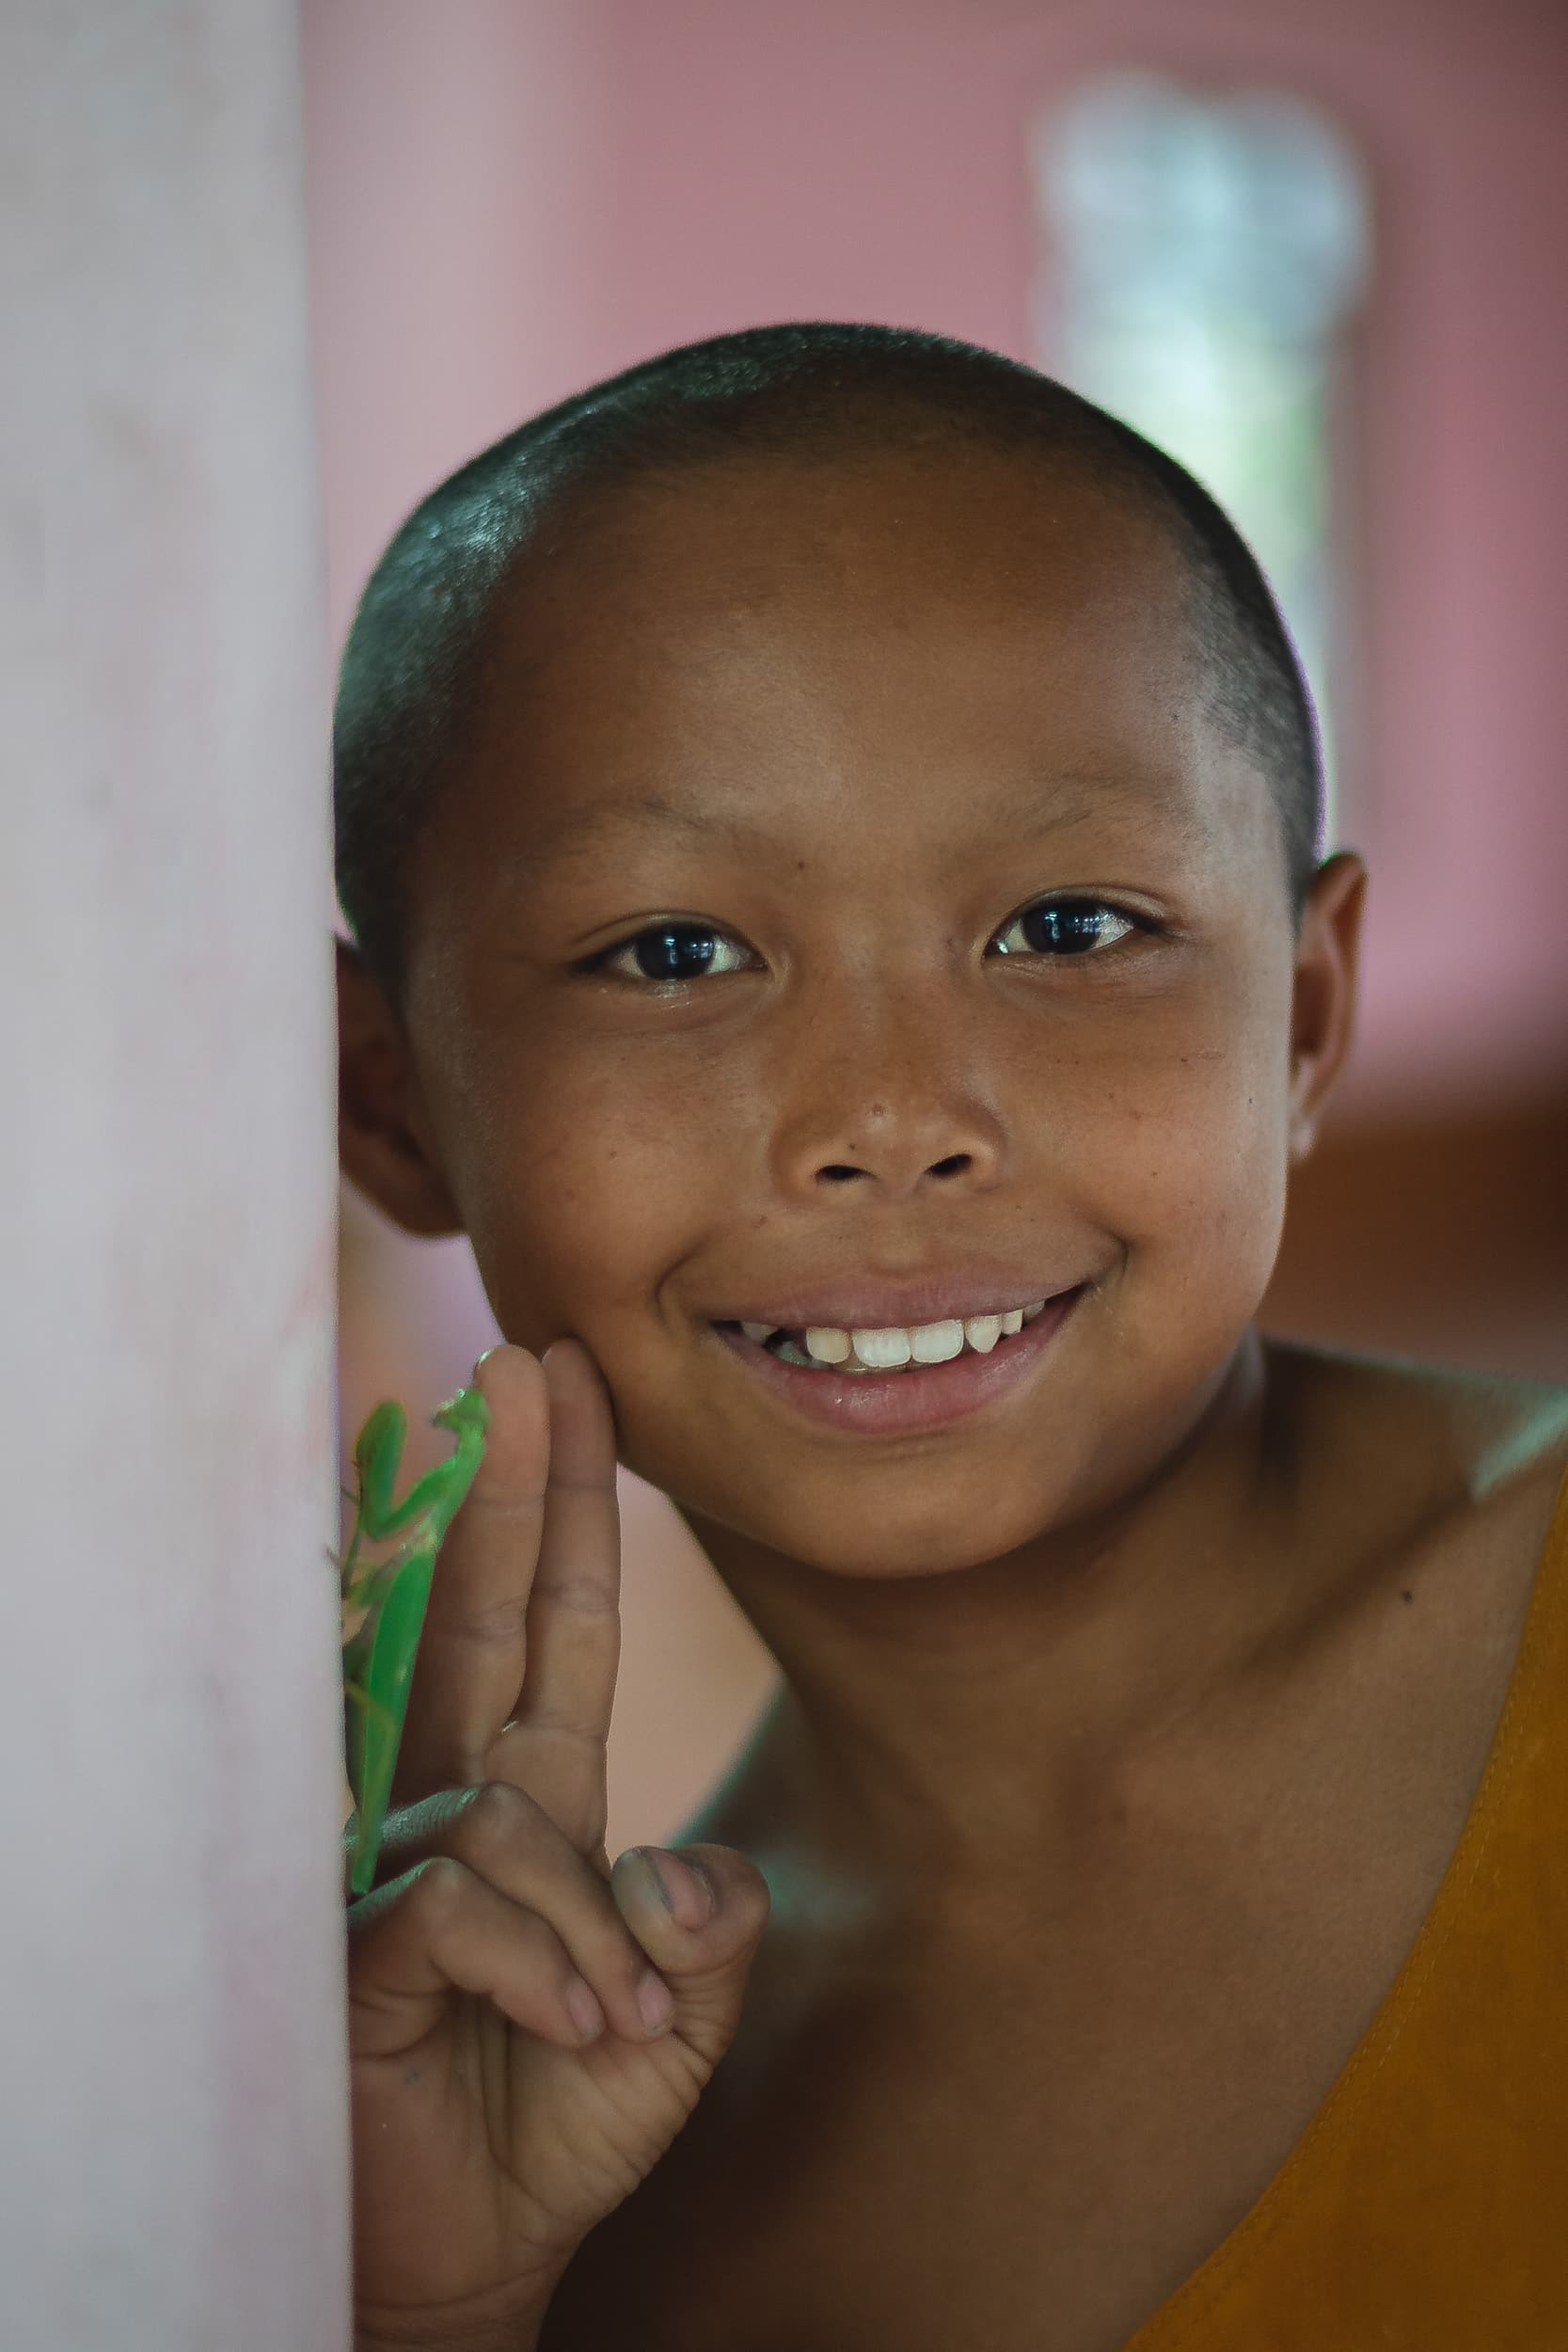 laotian young monk portrait